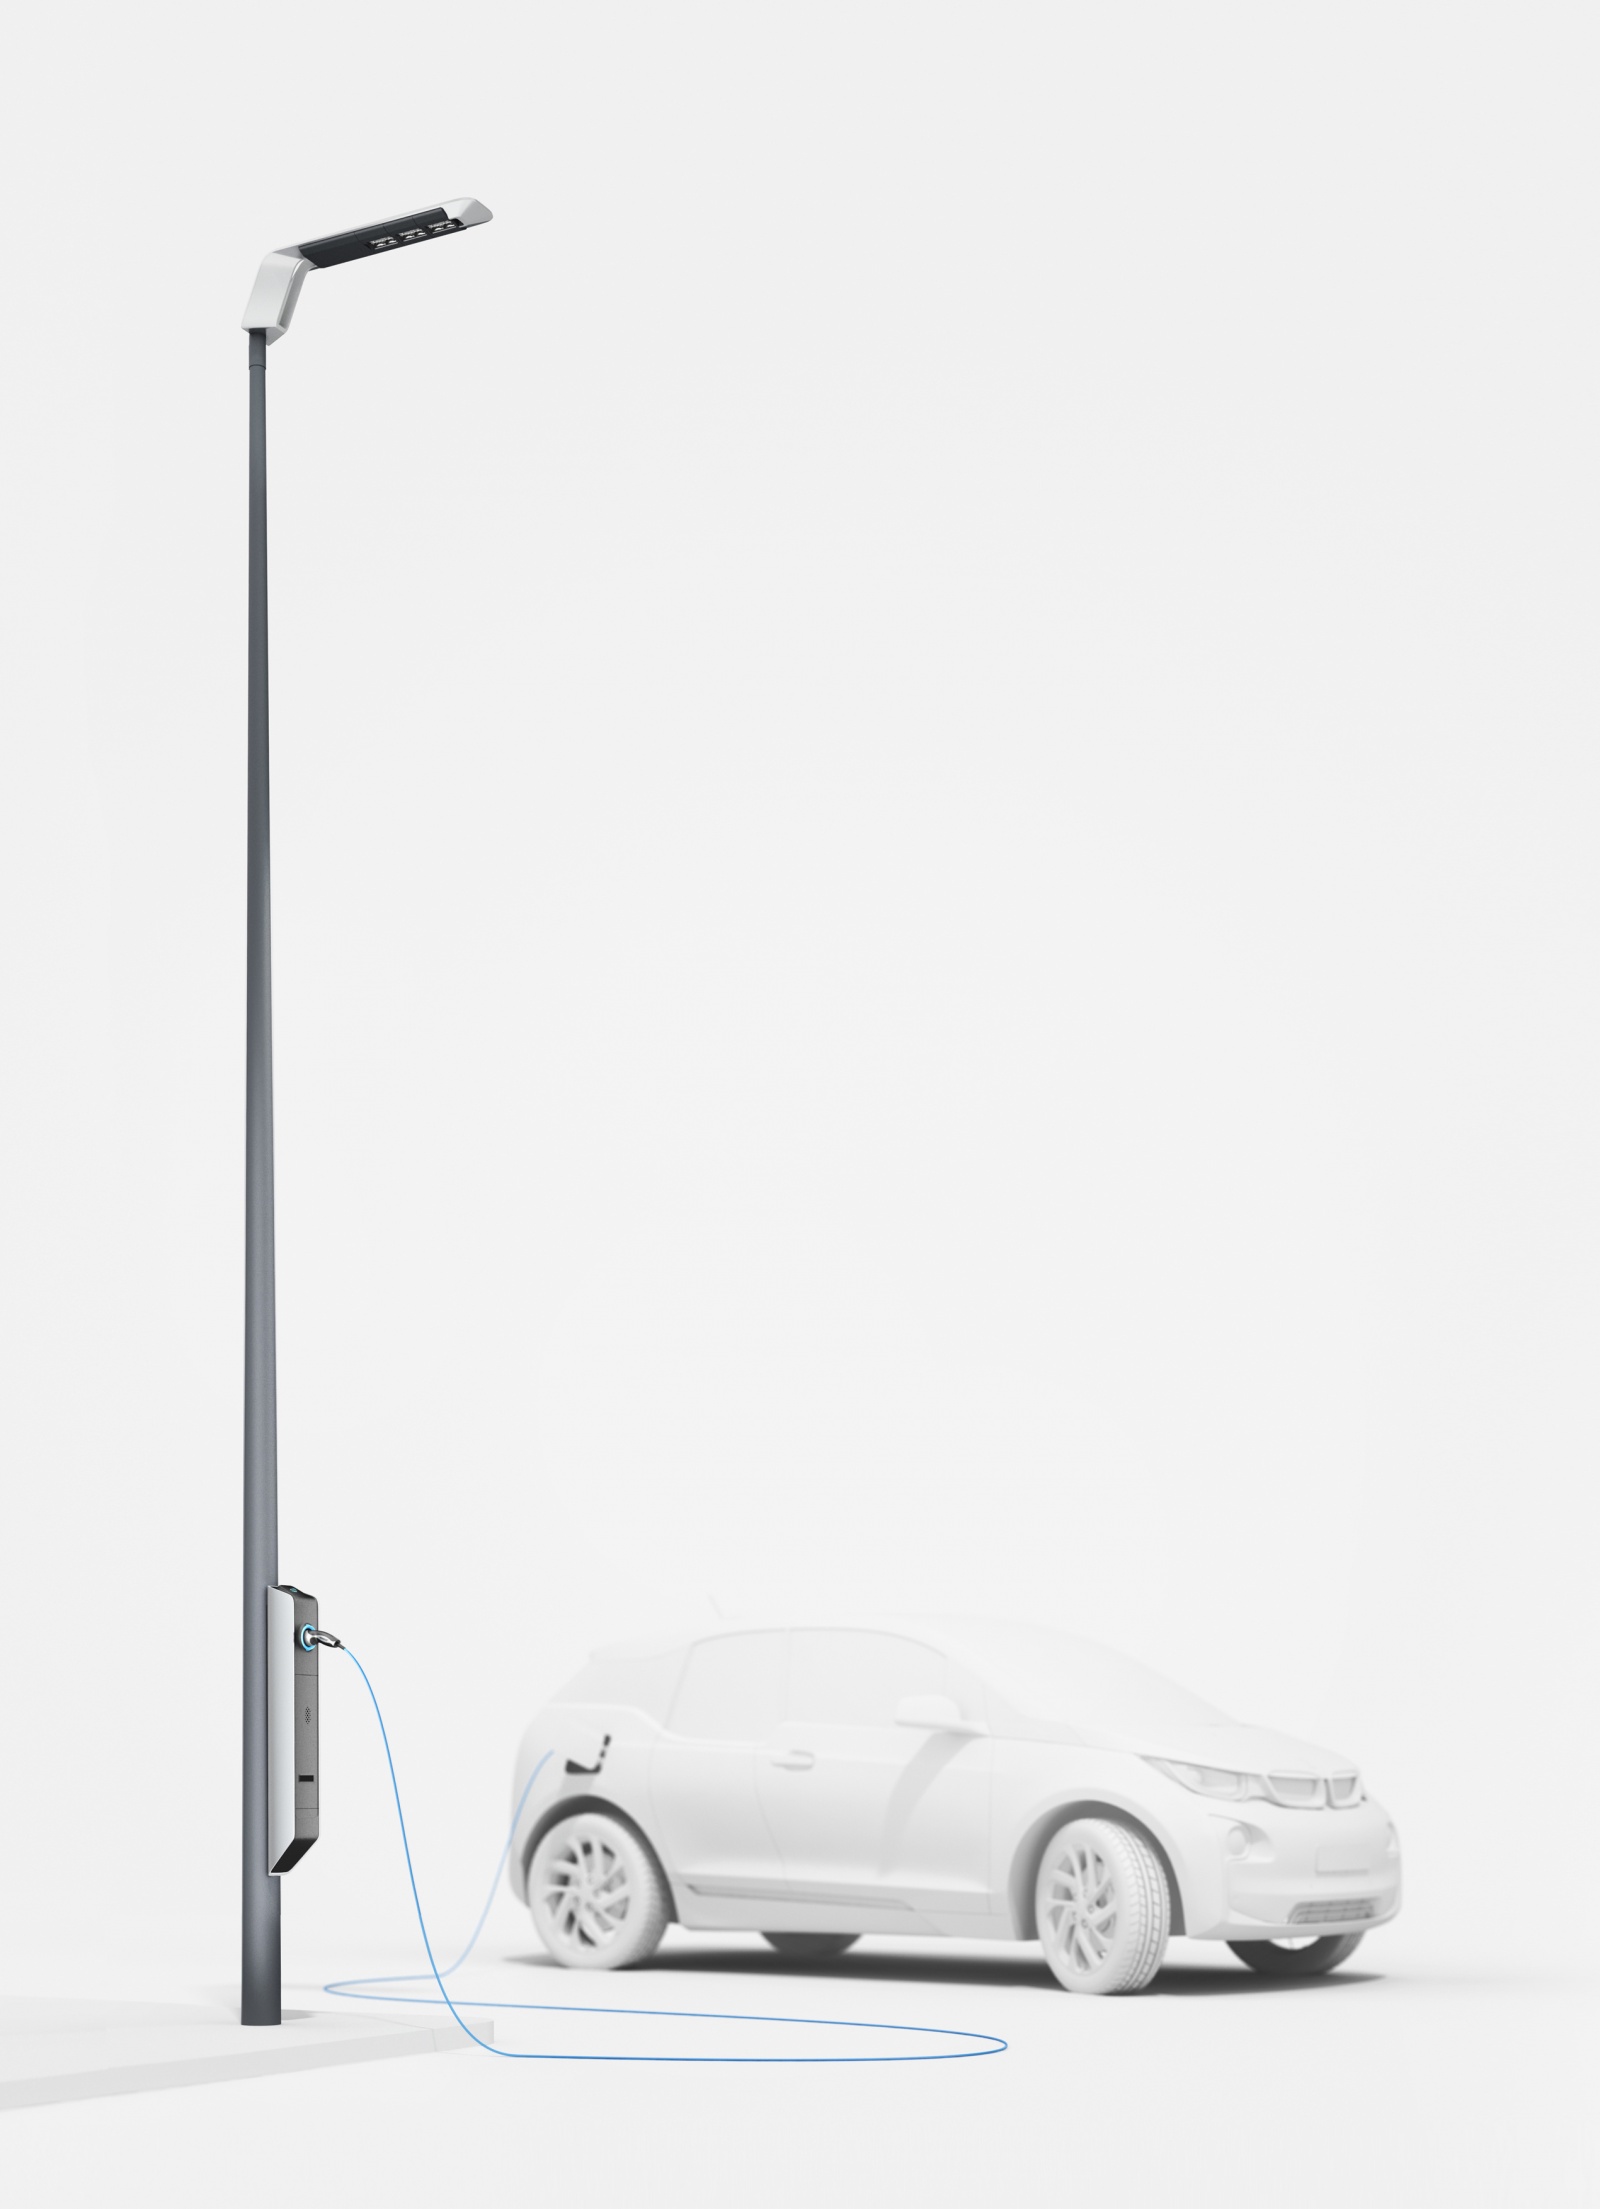 BMW предлагает устанавливать на улицах городов фонари с разъемом для зарядки электромобилей